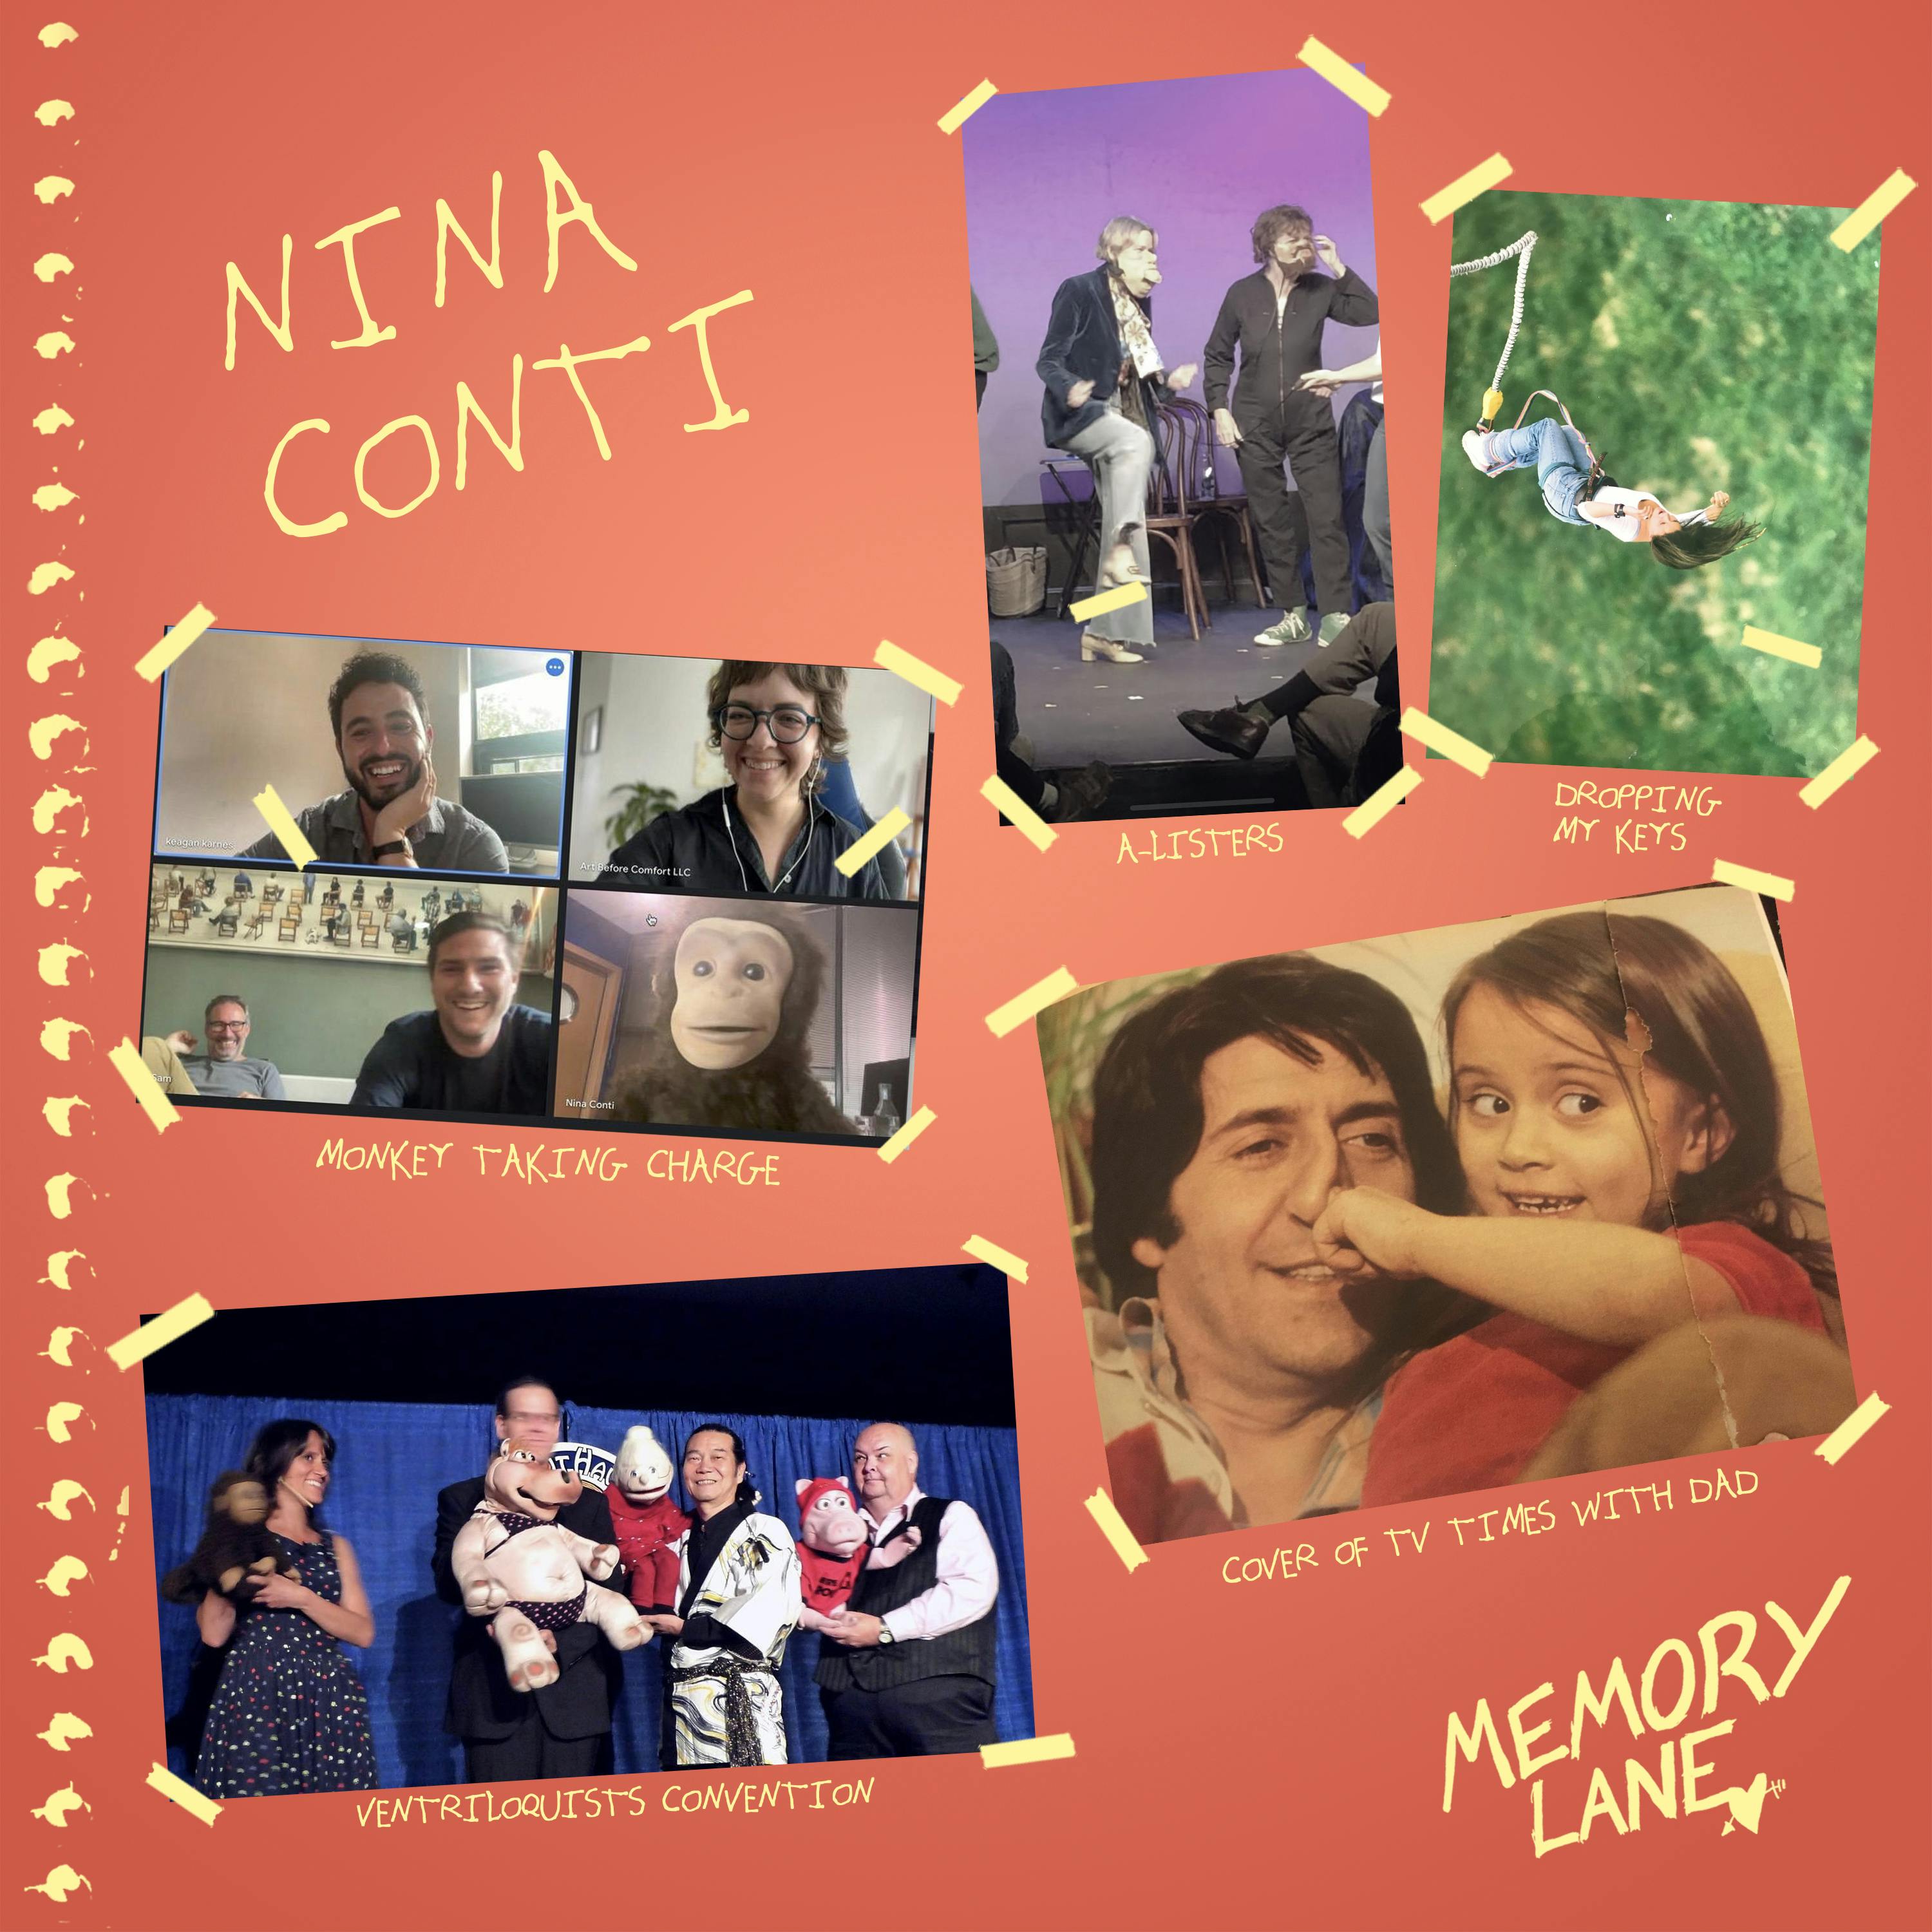 S03 E19: Nina Conti